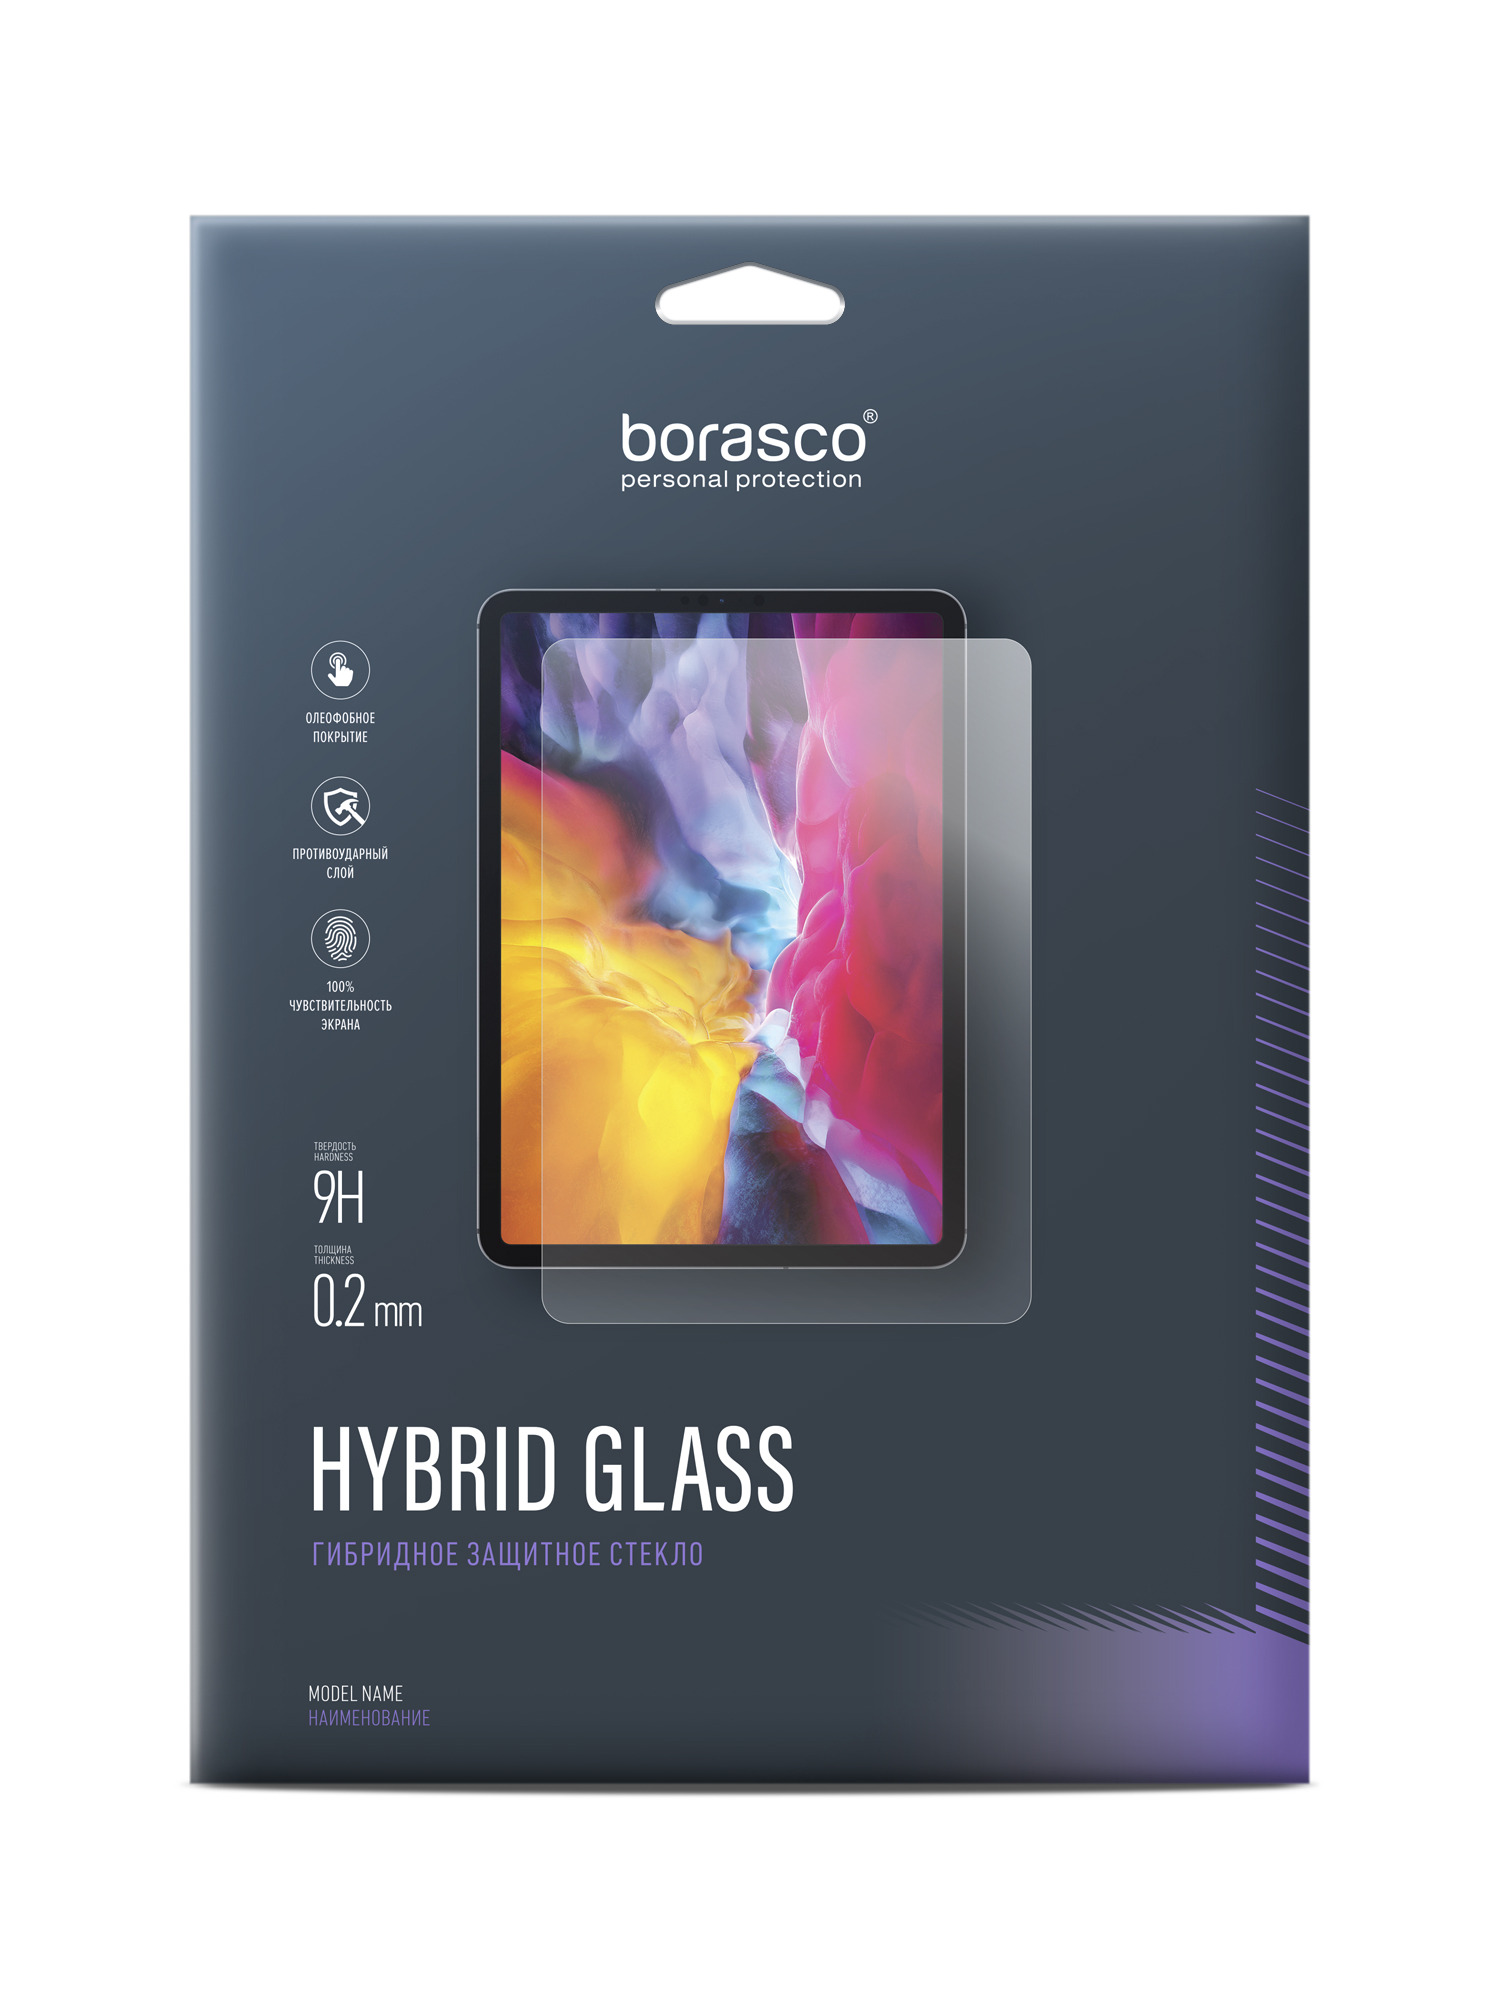 Защитное стекло Hybrid Glass для Lenovo Lenovo Tab M10 Plus TB-X606F 10.3 9h закаленное стекло для lenovo tab m10 plus 10 3 дюймов защита экрана планшета для m10 fhd plus 2nd gen tb x606f tb x606x